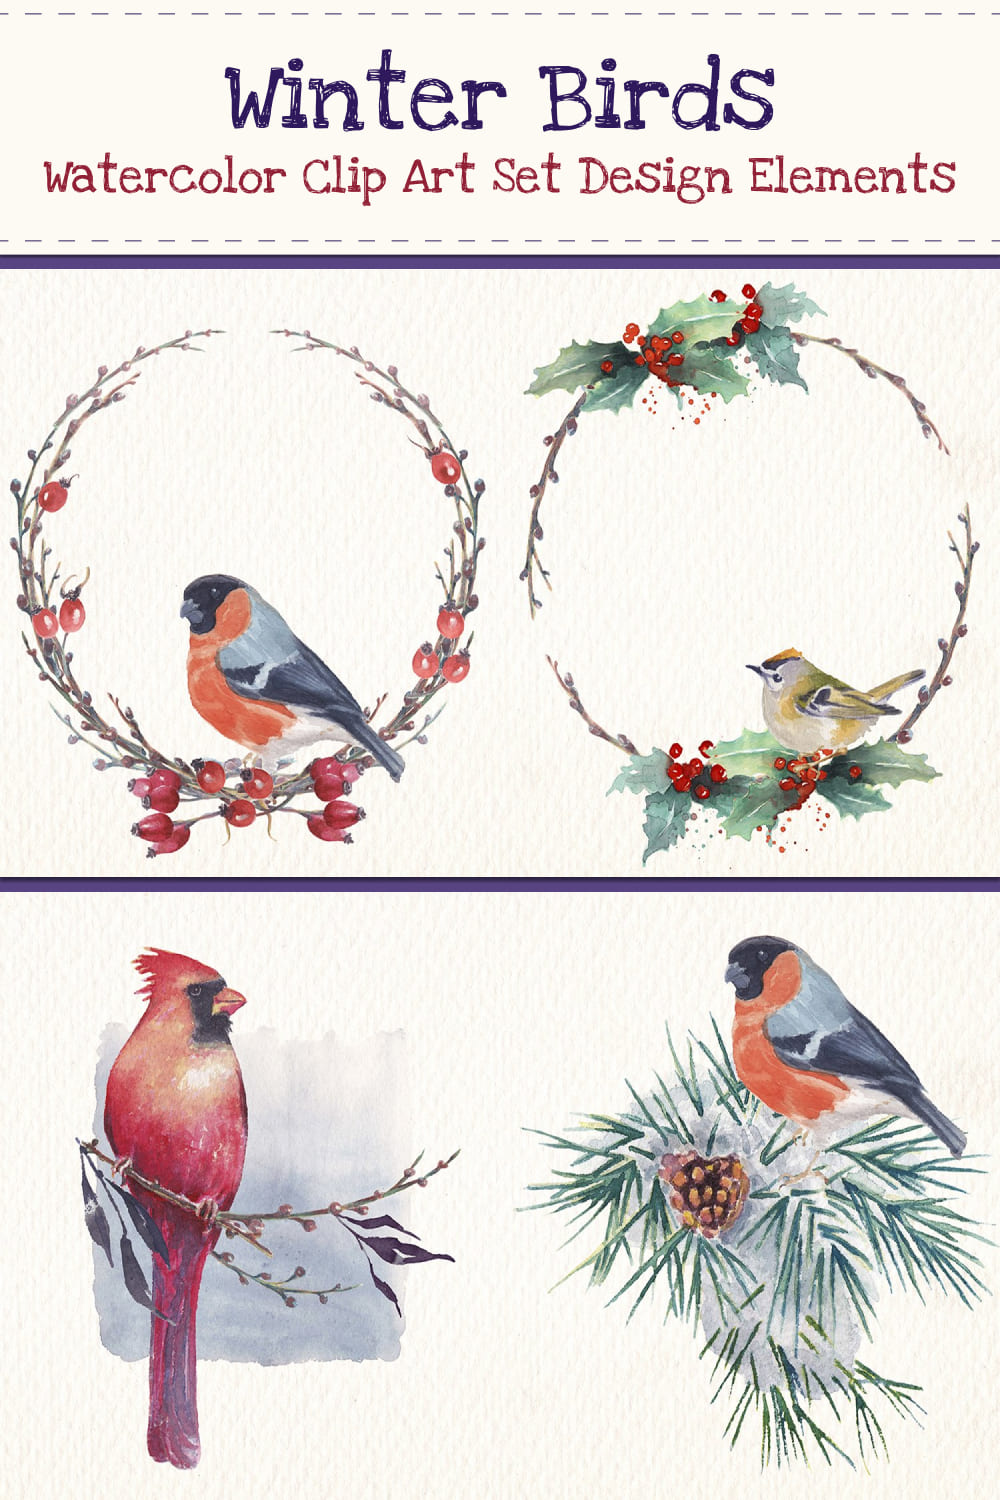 Winter birds watercolor clip art set - pinterest image preview.